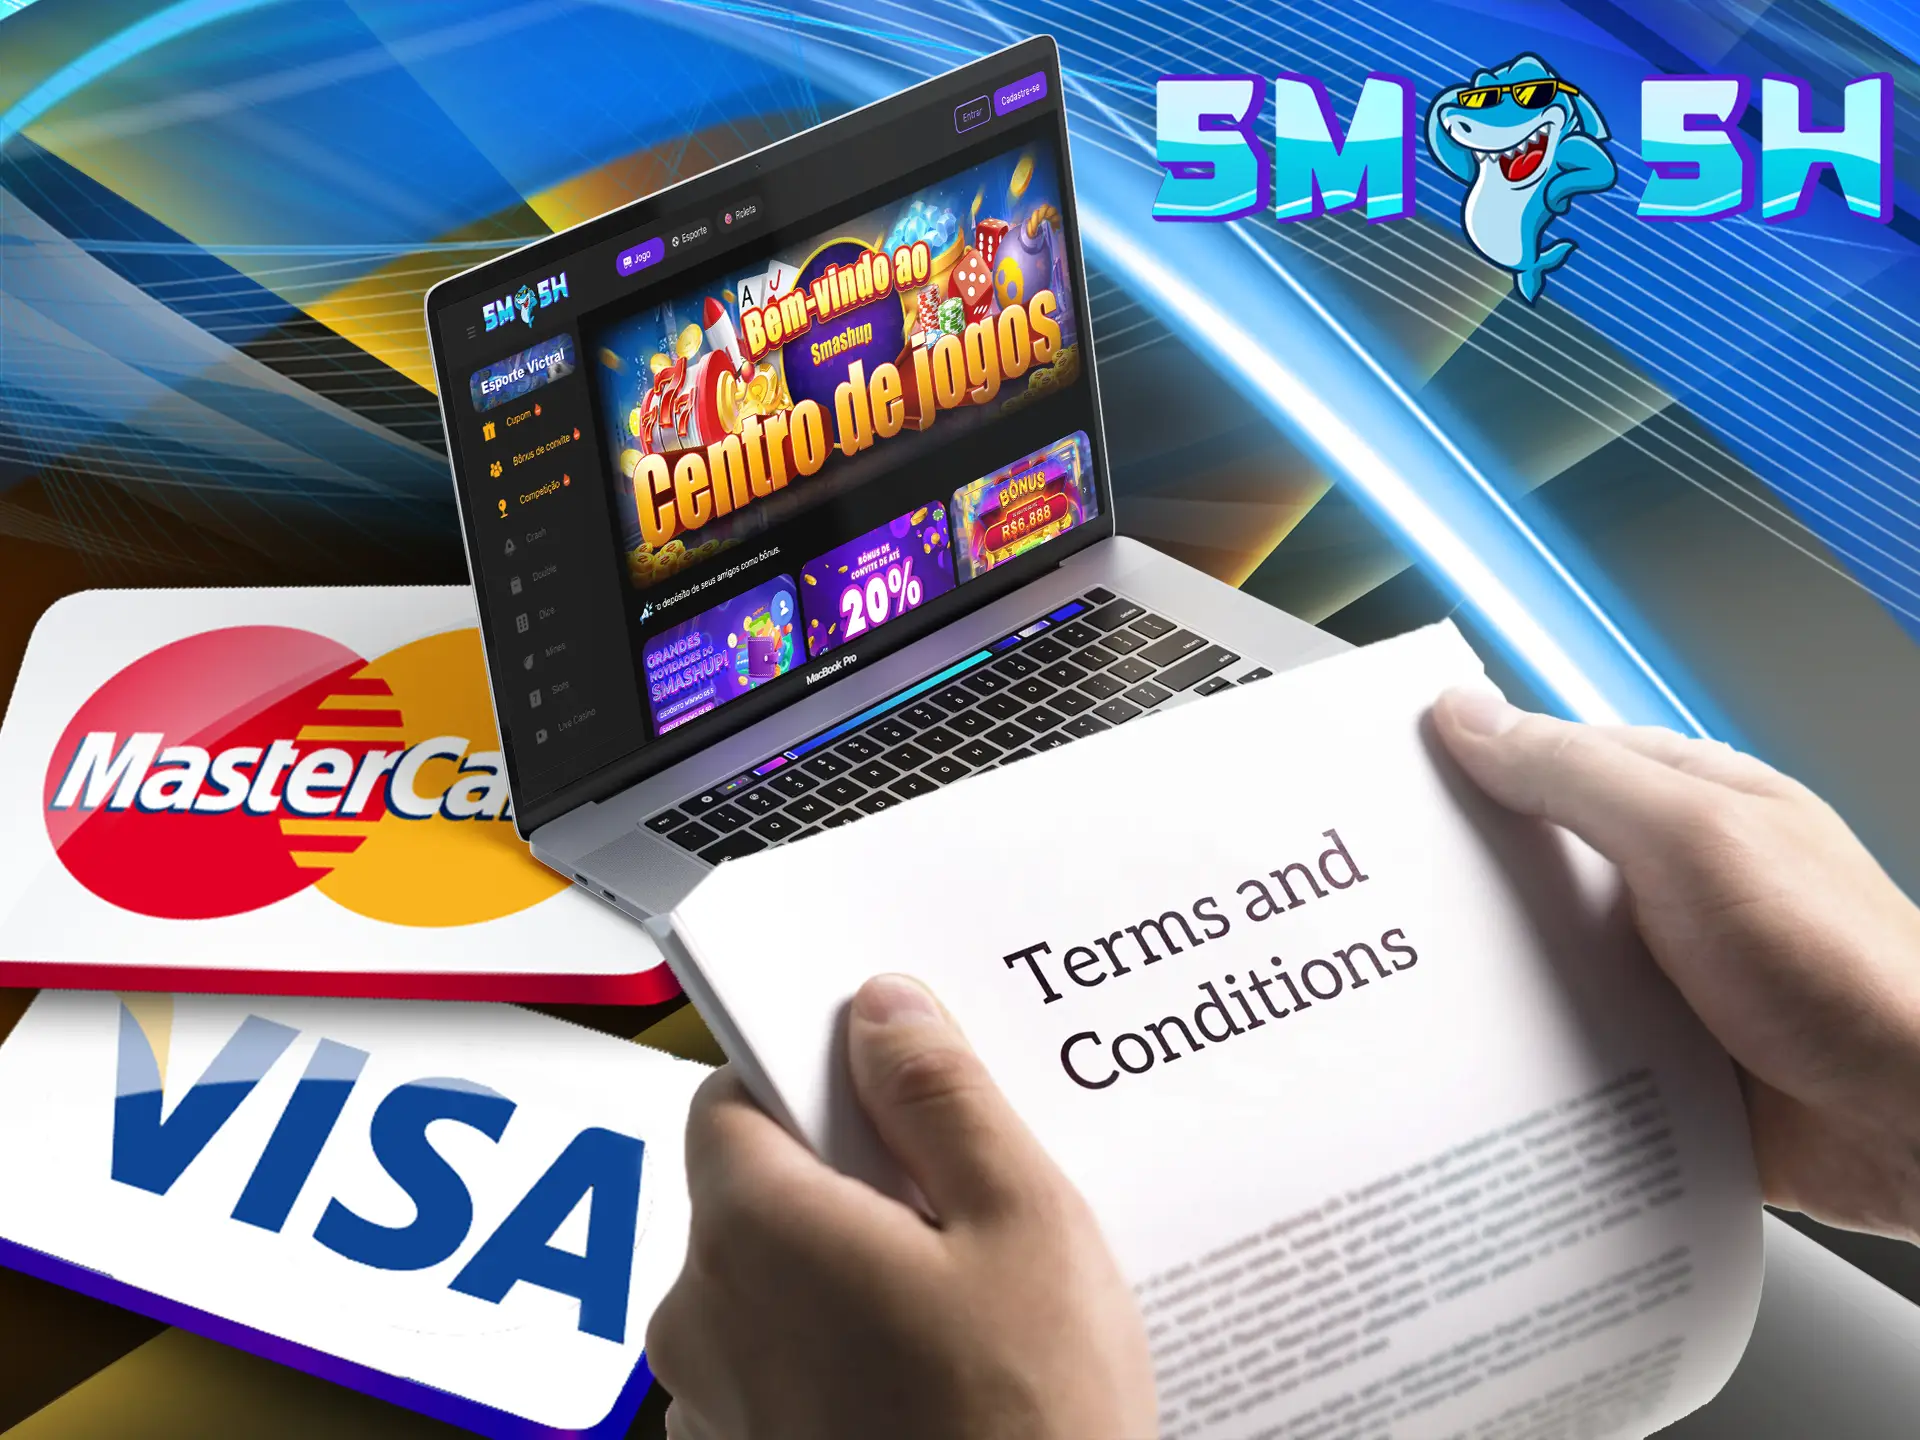 Em finanças, o principal aspecto são as regras que serão usadas para fazer pagamentos, com as quais o jogador do Smashup deve estar familiarizado.